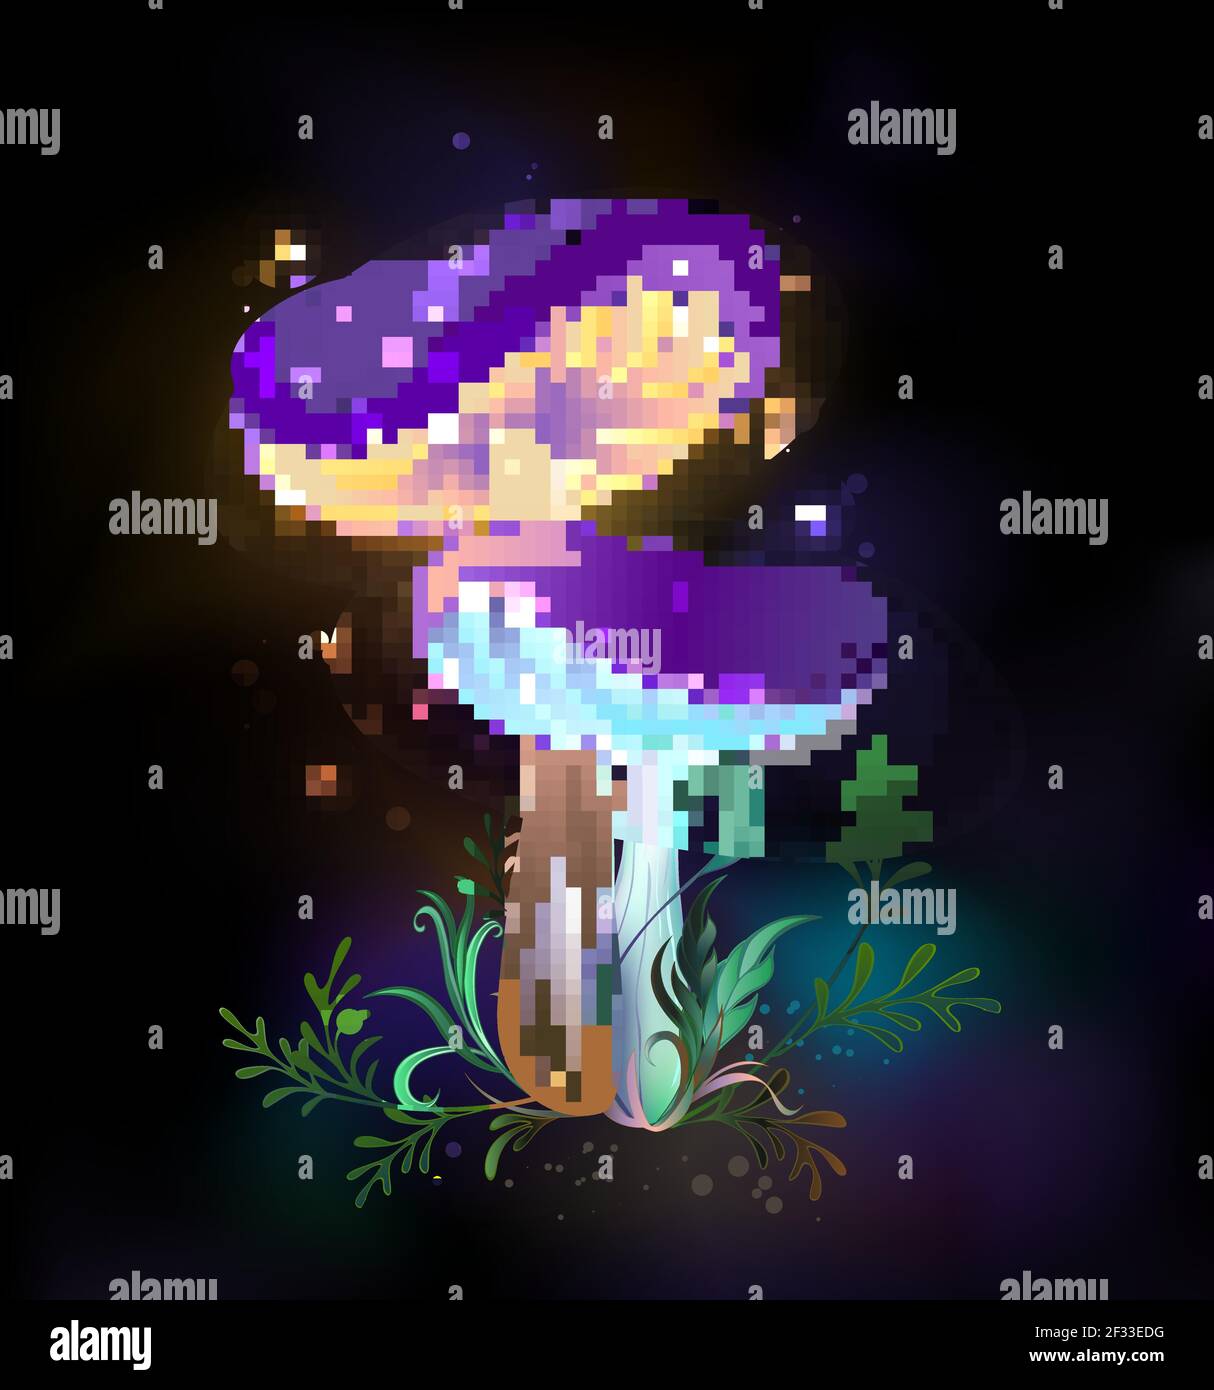 Zwei glühende, magische, reife Pilze mit violetten Mützen mit gelben Beinen auf schwarz leuchtendem Hintergrund. Fabelhafter Pilz. Stock Vektor